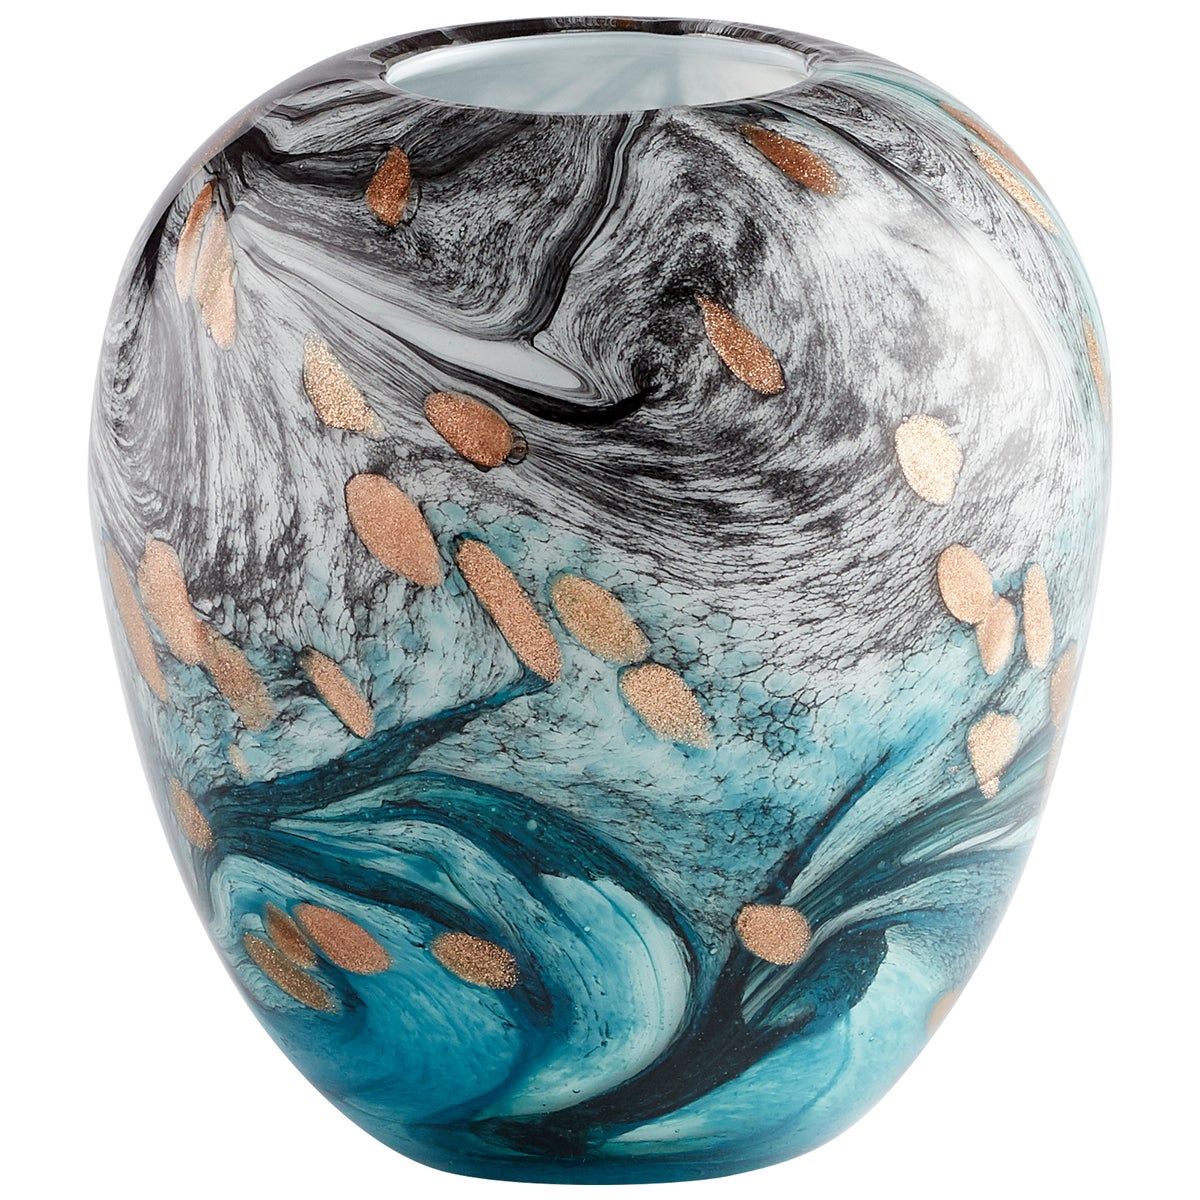 Prismatic Vase | Multi Colored - Small